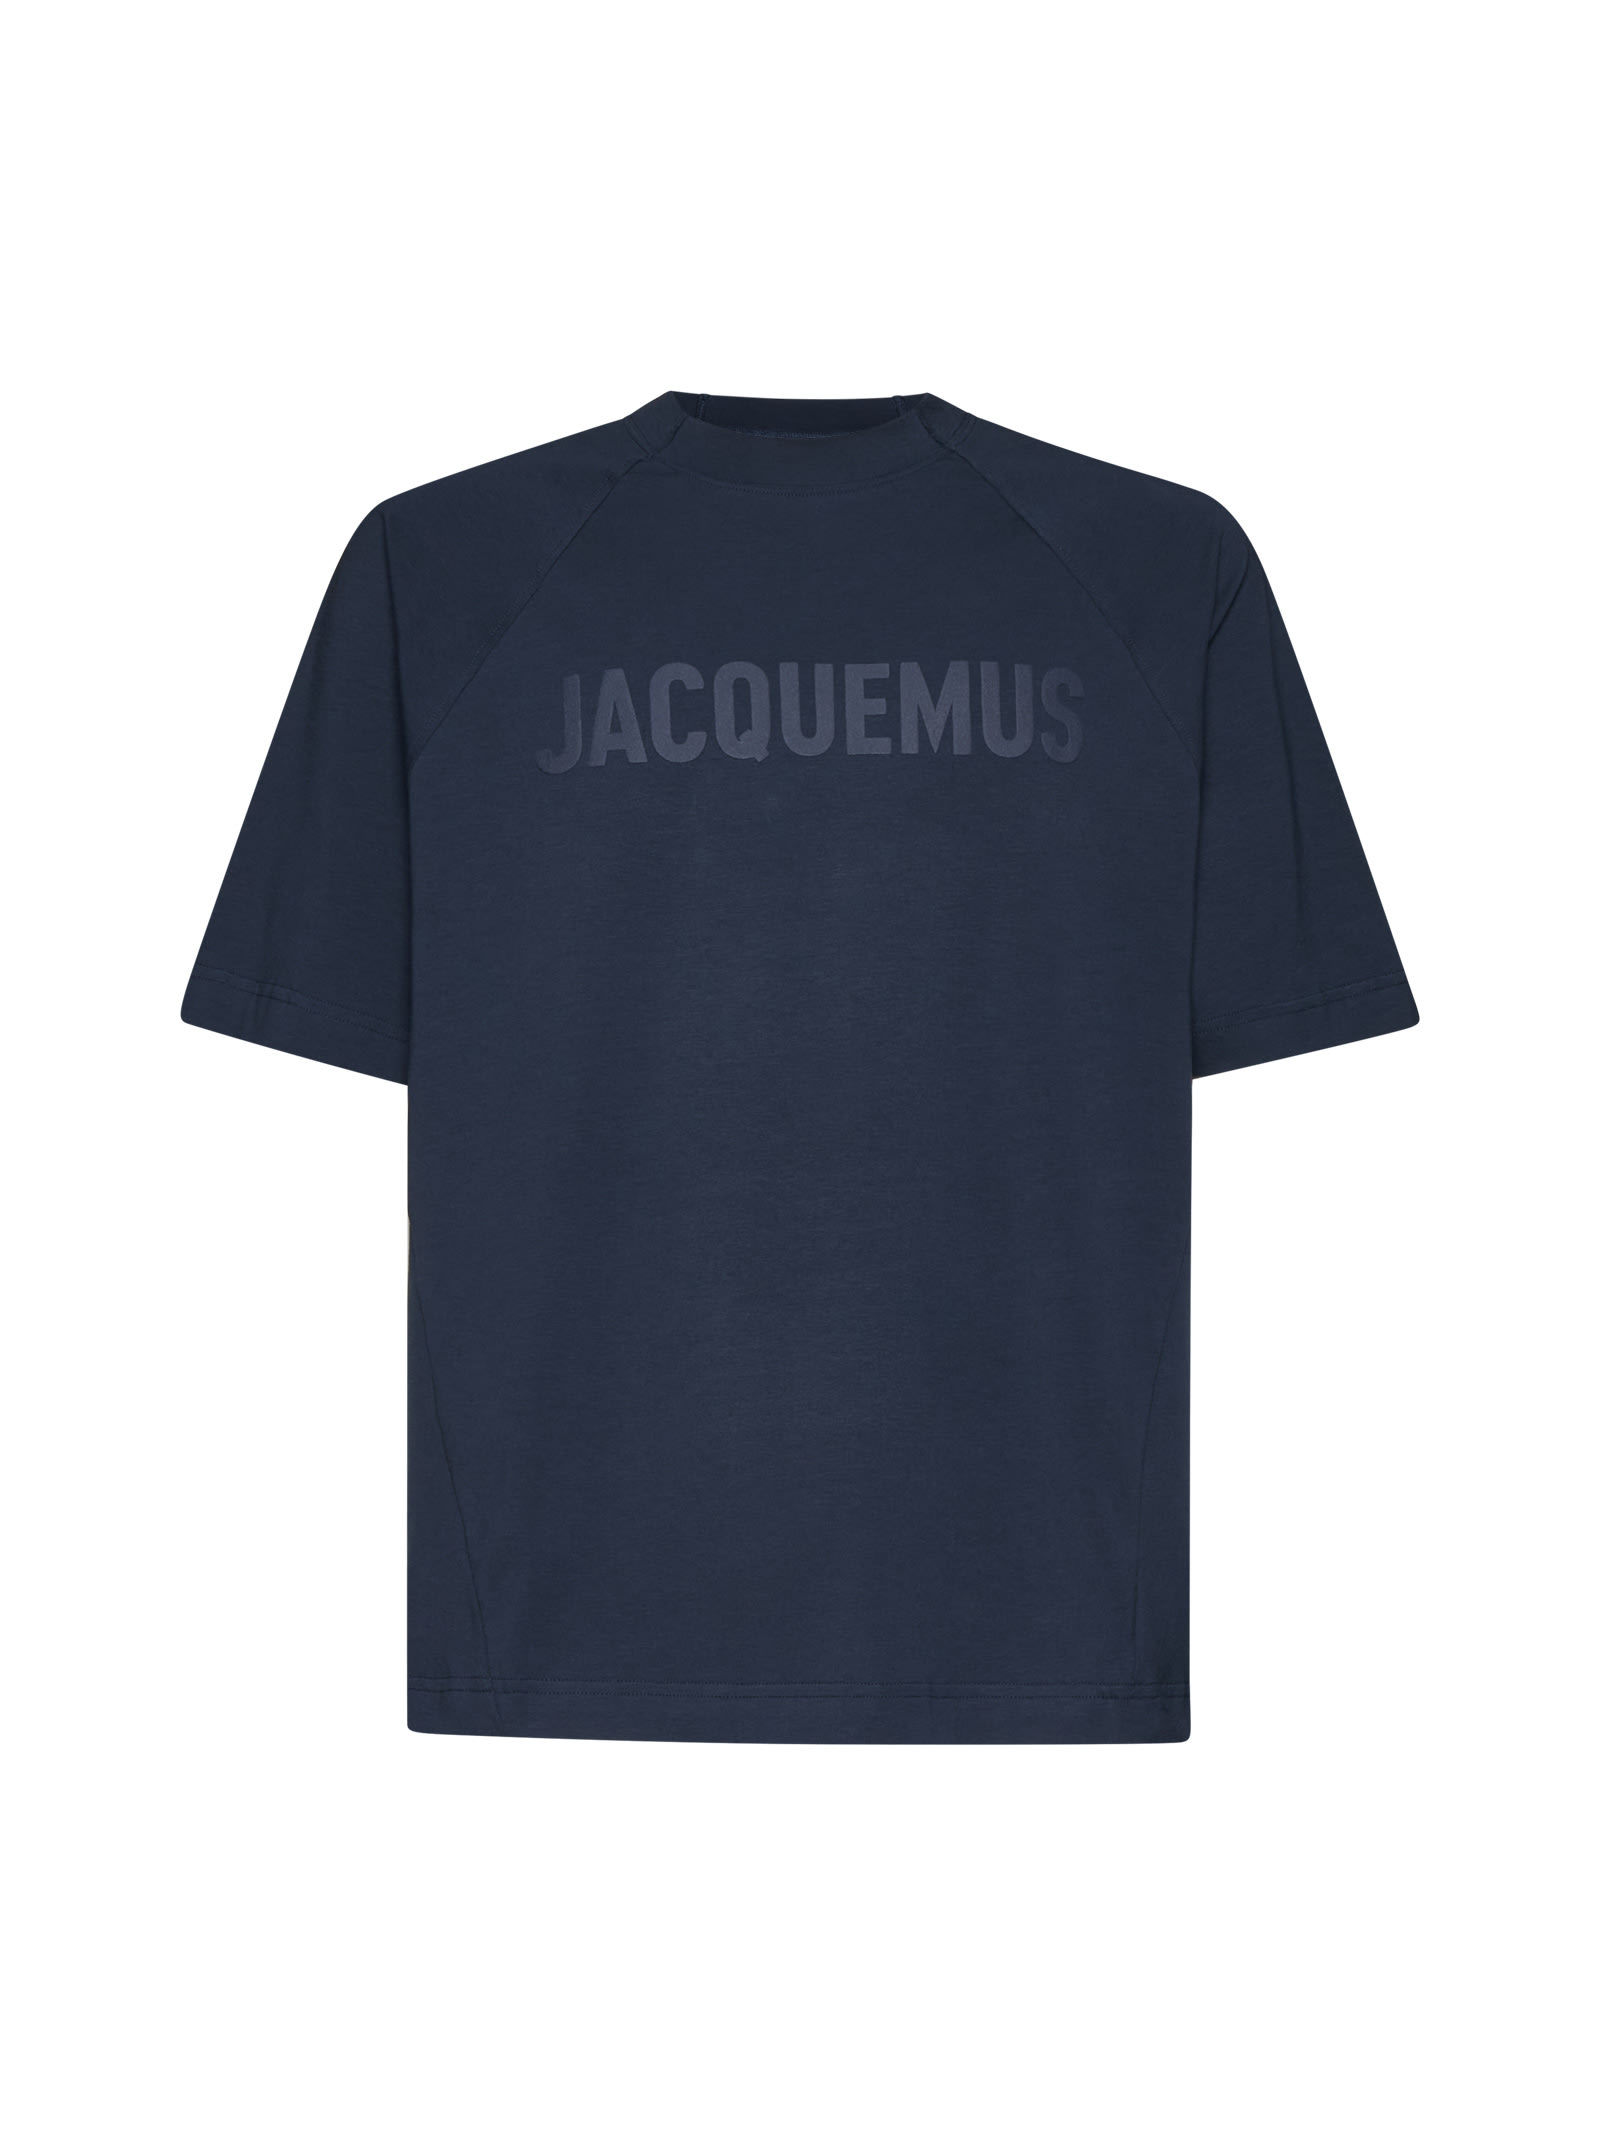 Jacquemus T-shirt In Dark Navy